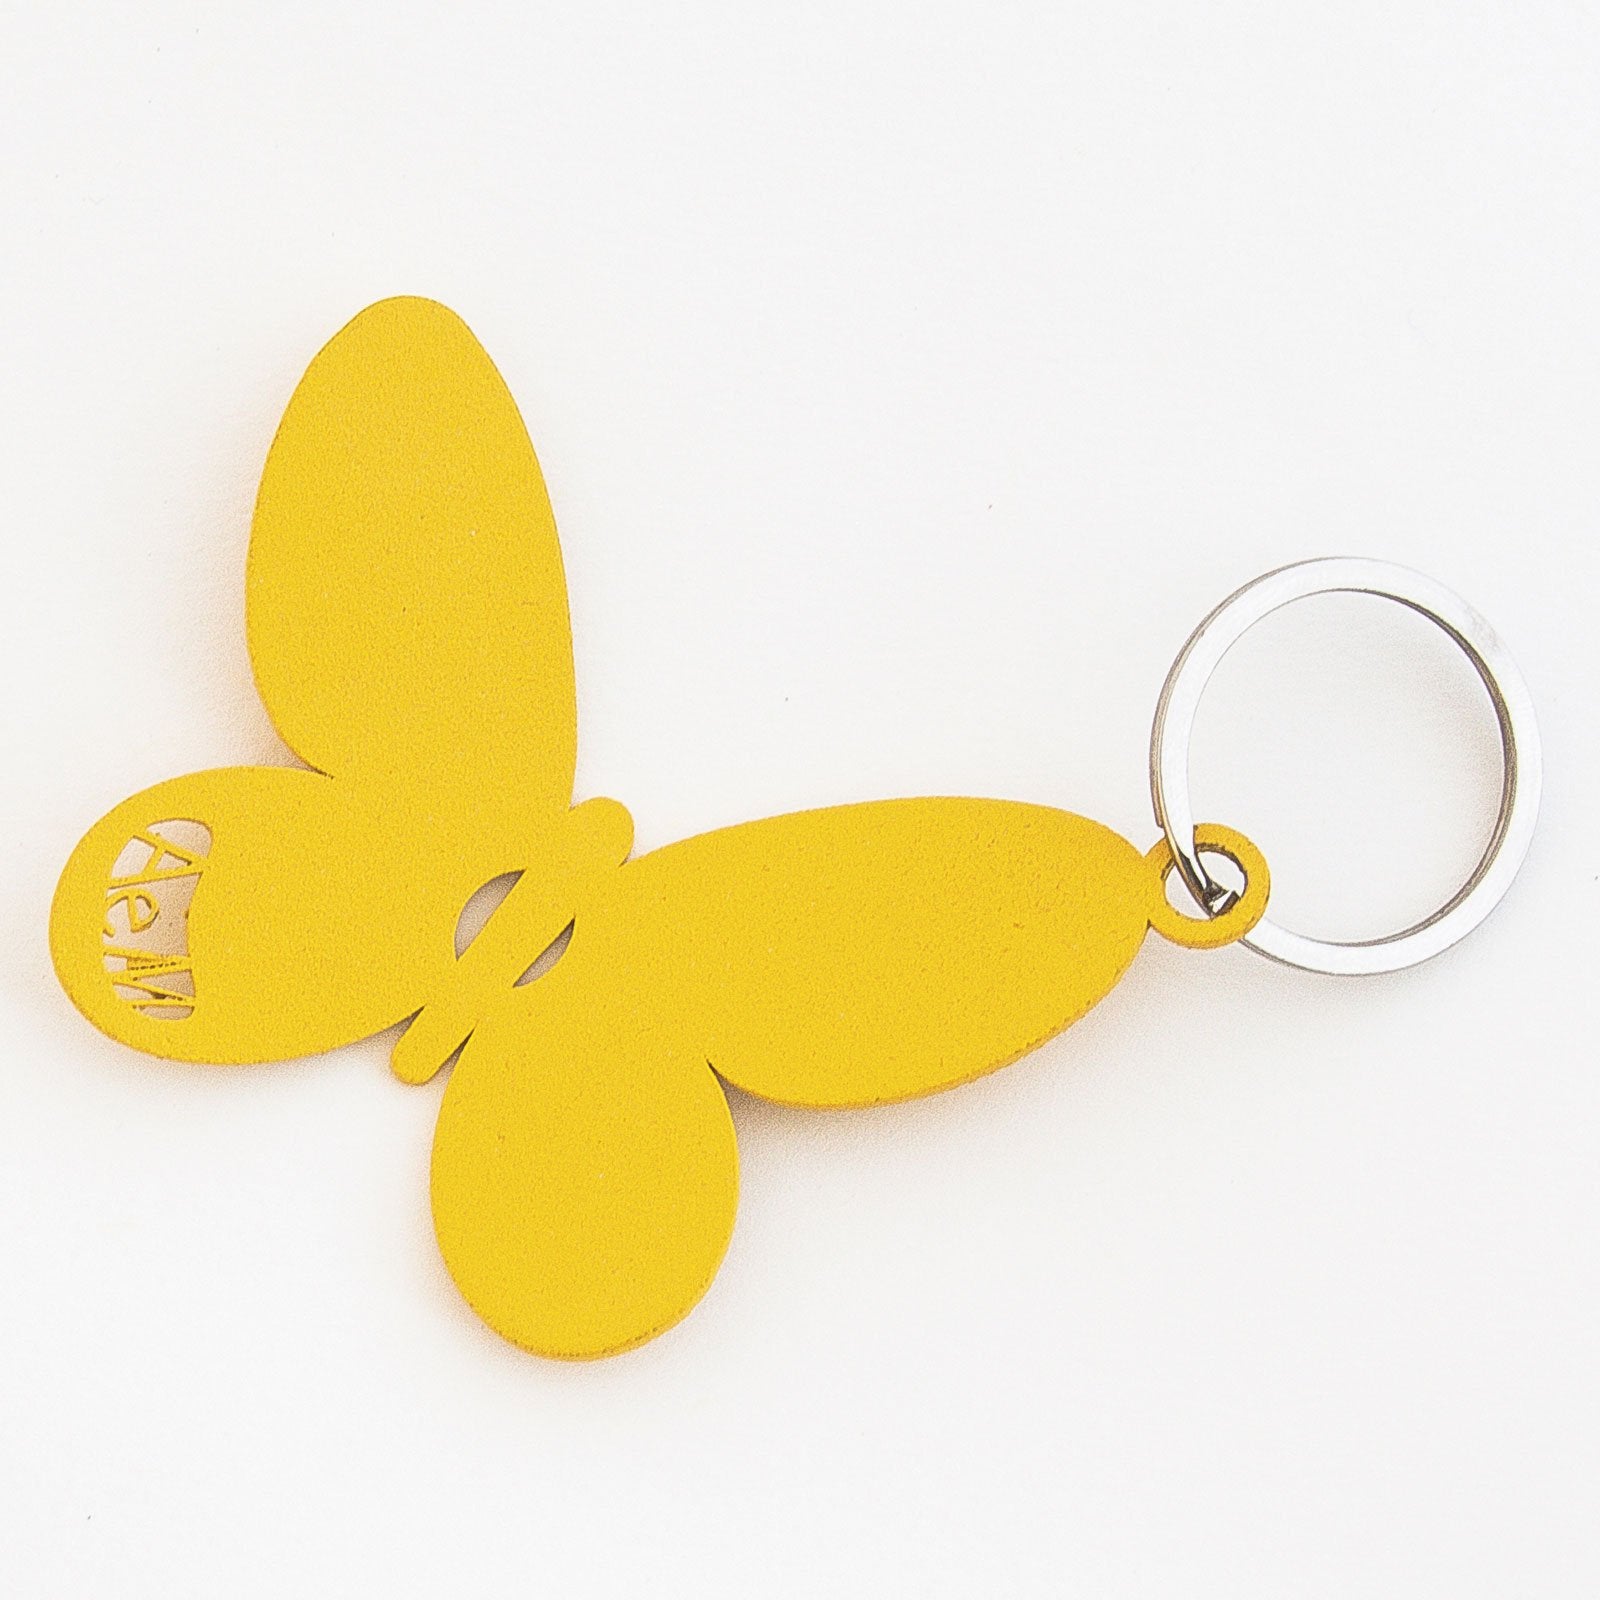 Portachiavi in metallo verniciato a forma di farfalla. Dimensioni: 7 x 6 cm. In negozio e online su tuttochic.it